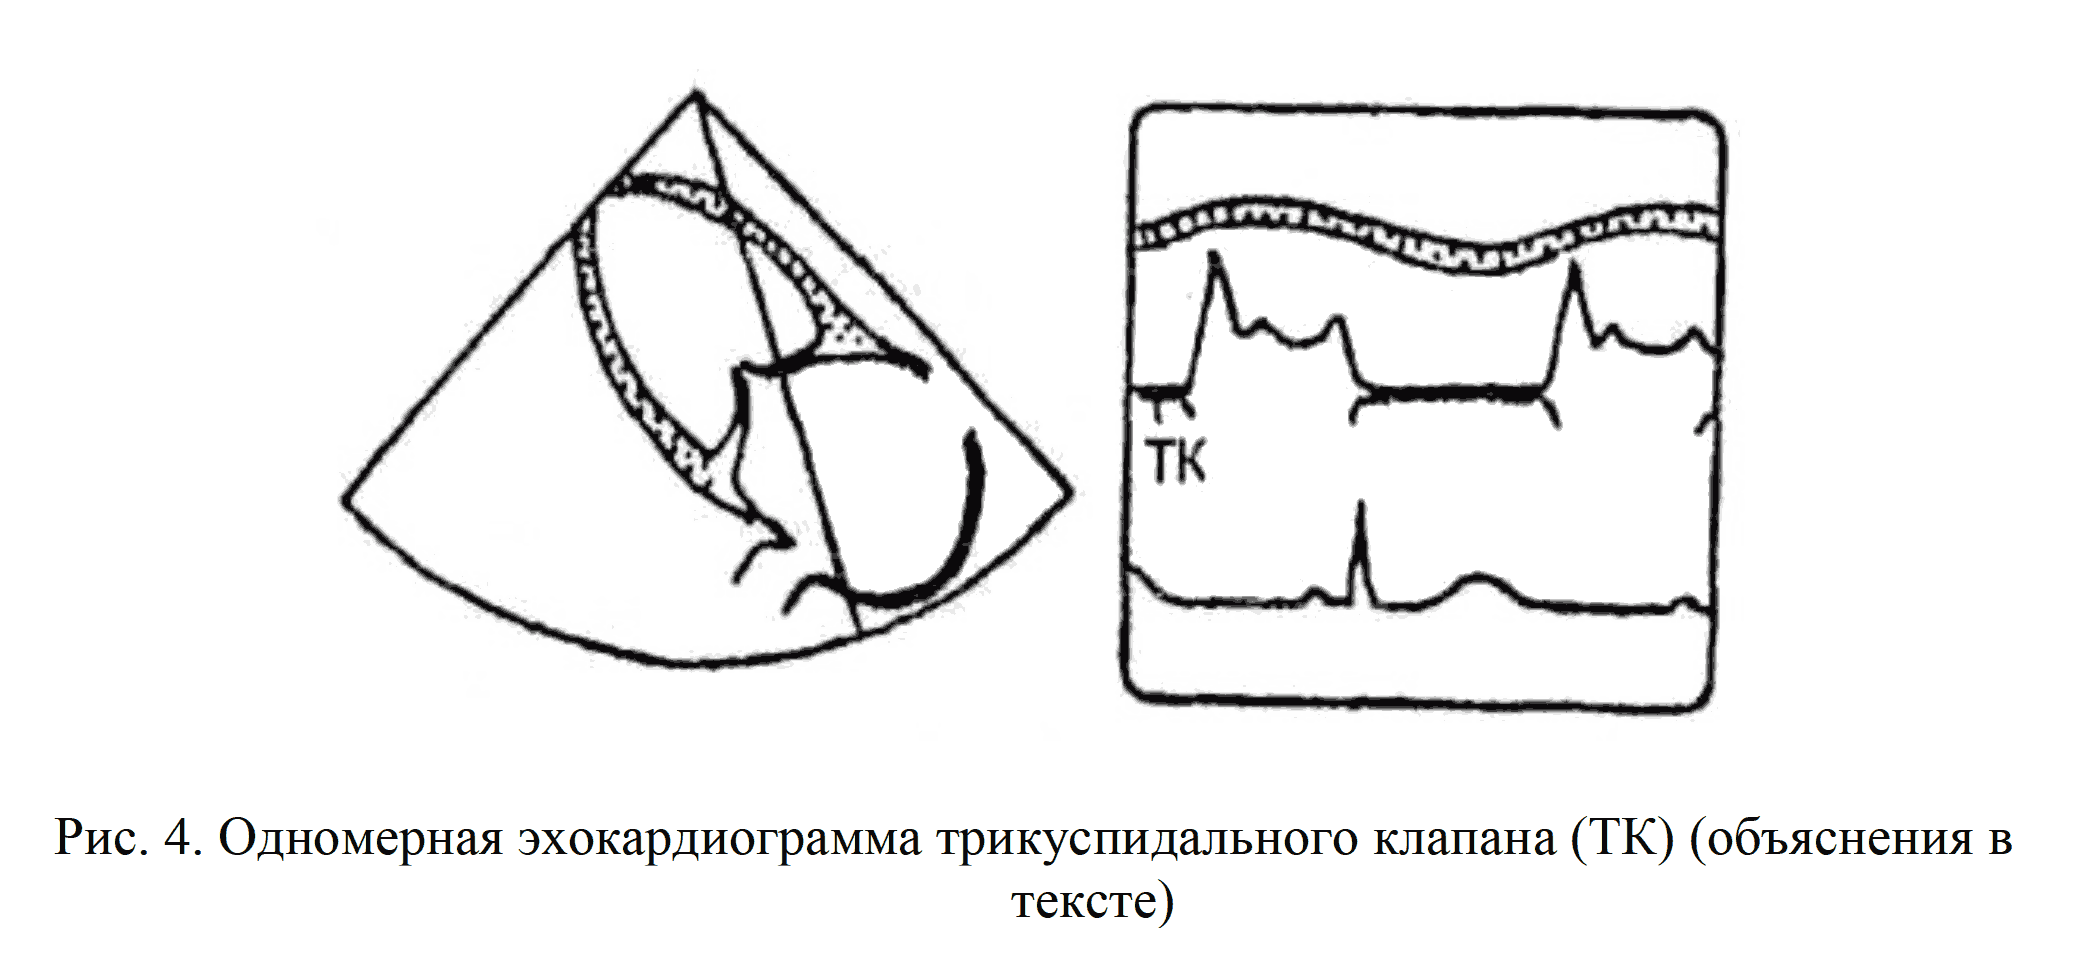 Рис. 4. Одномерная эхокардиограмма трикуспидального клапана (ТК)